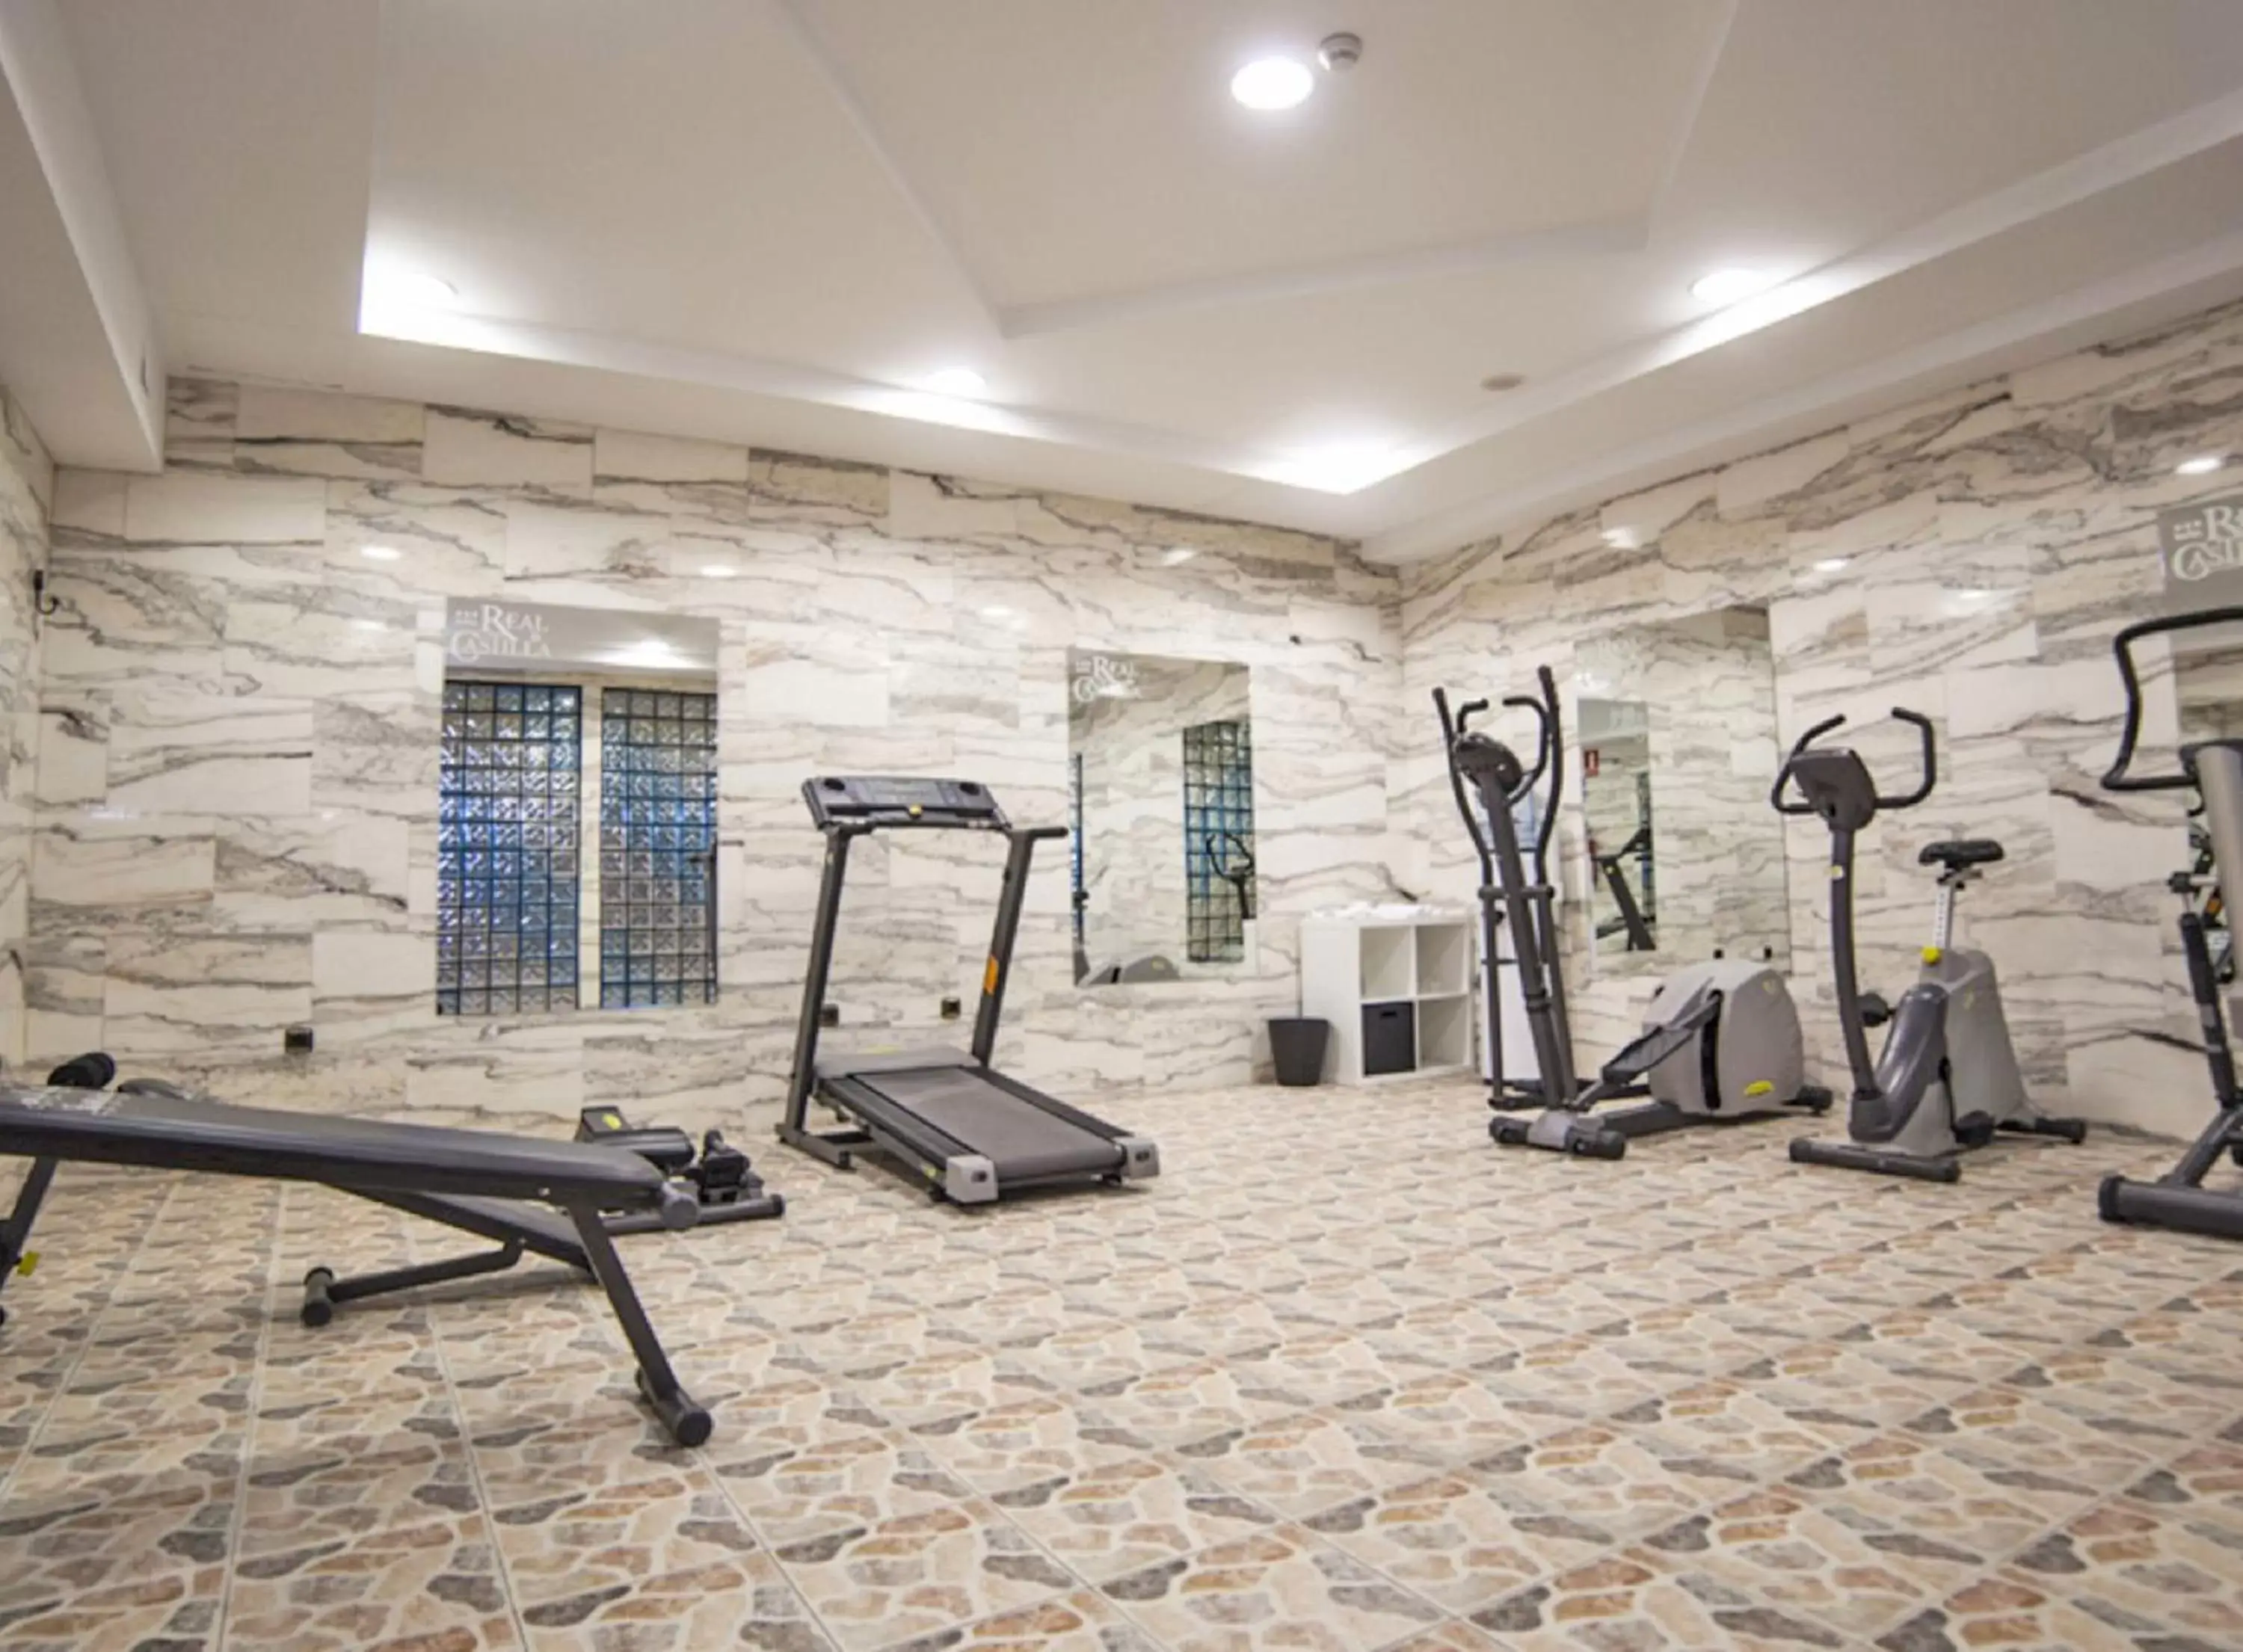 Fitness centre/facilities, Fitness Center/Facilities in Hotel Real de Castilla